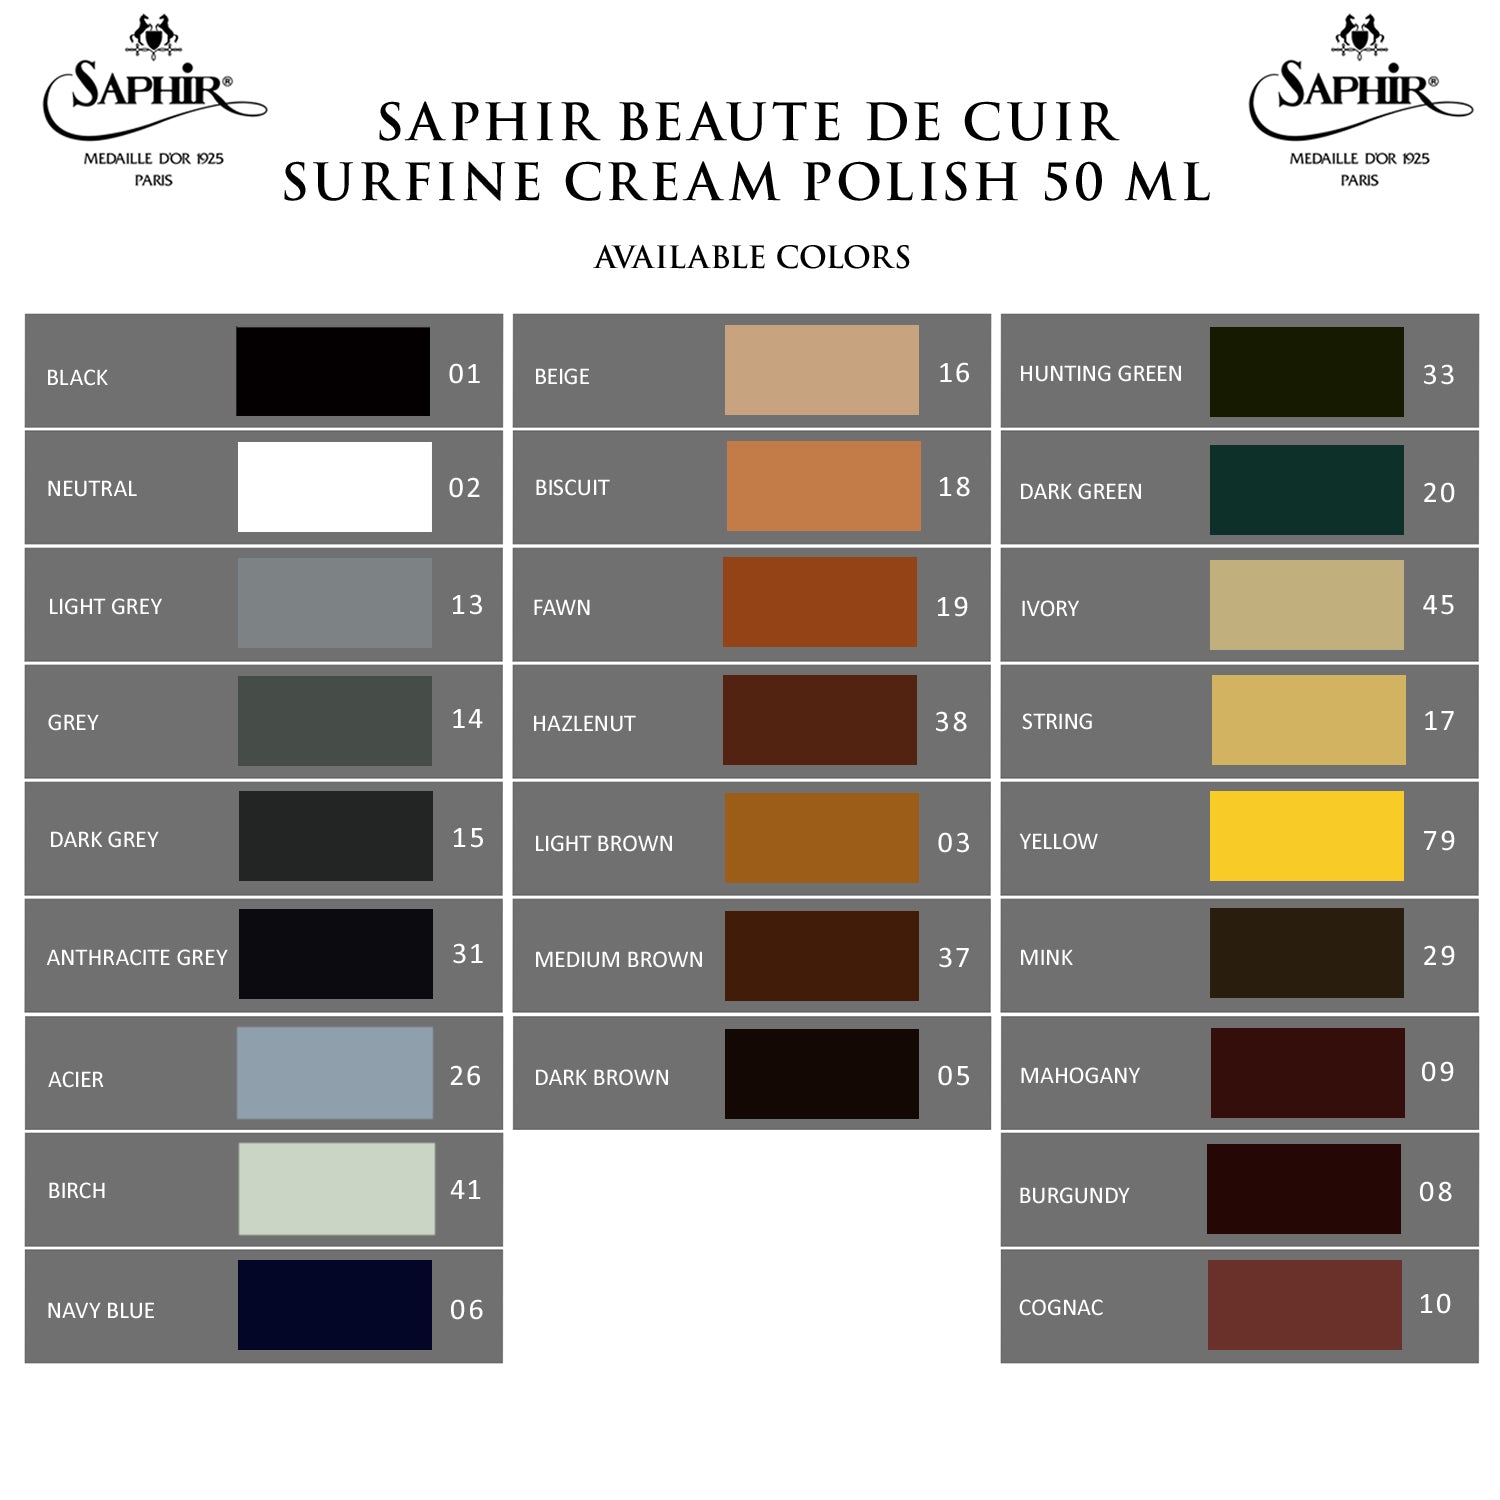 Saphir Beauté du Cuir Products - Belmont Leather Company